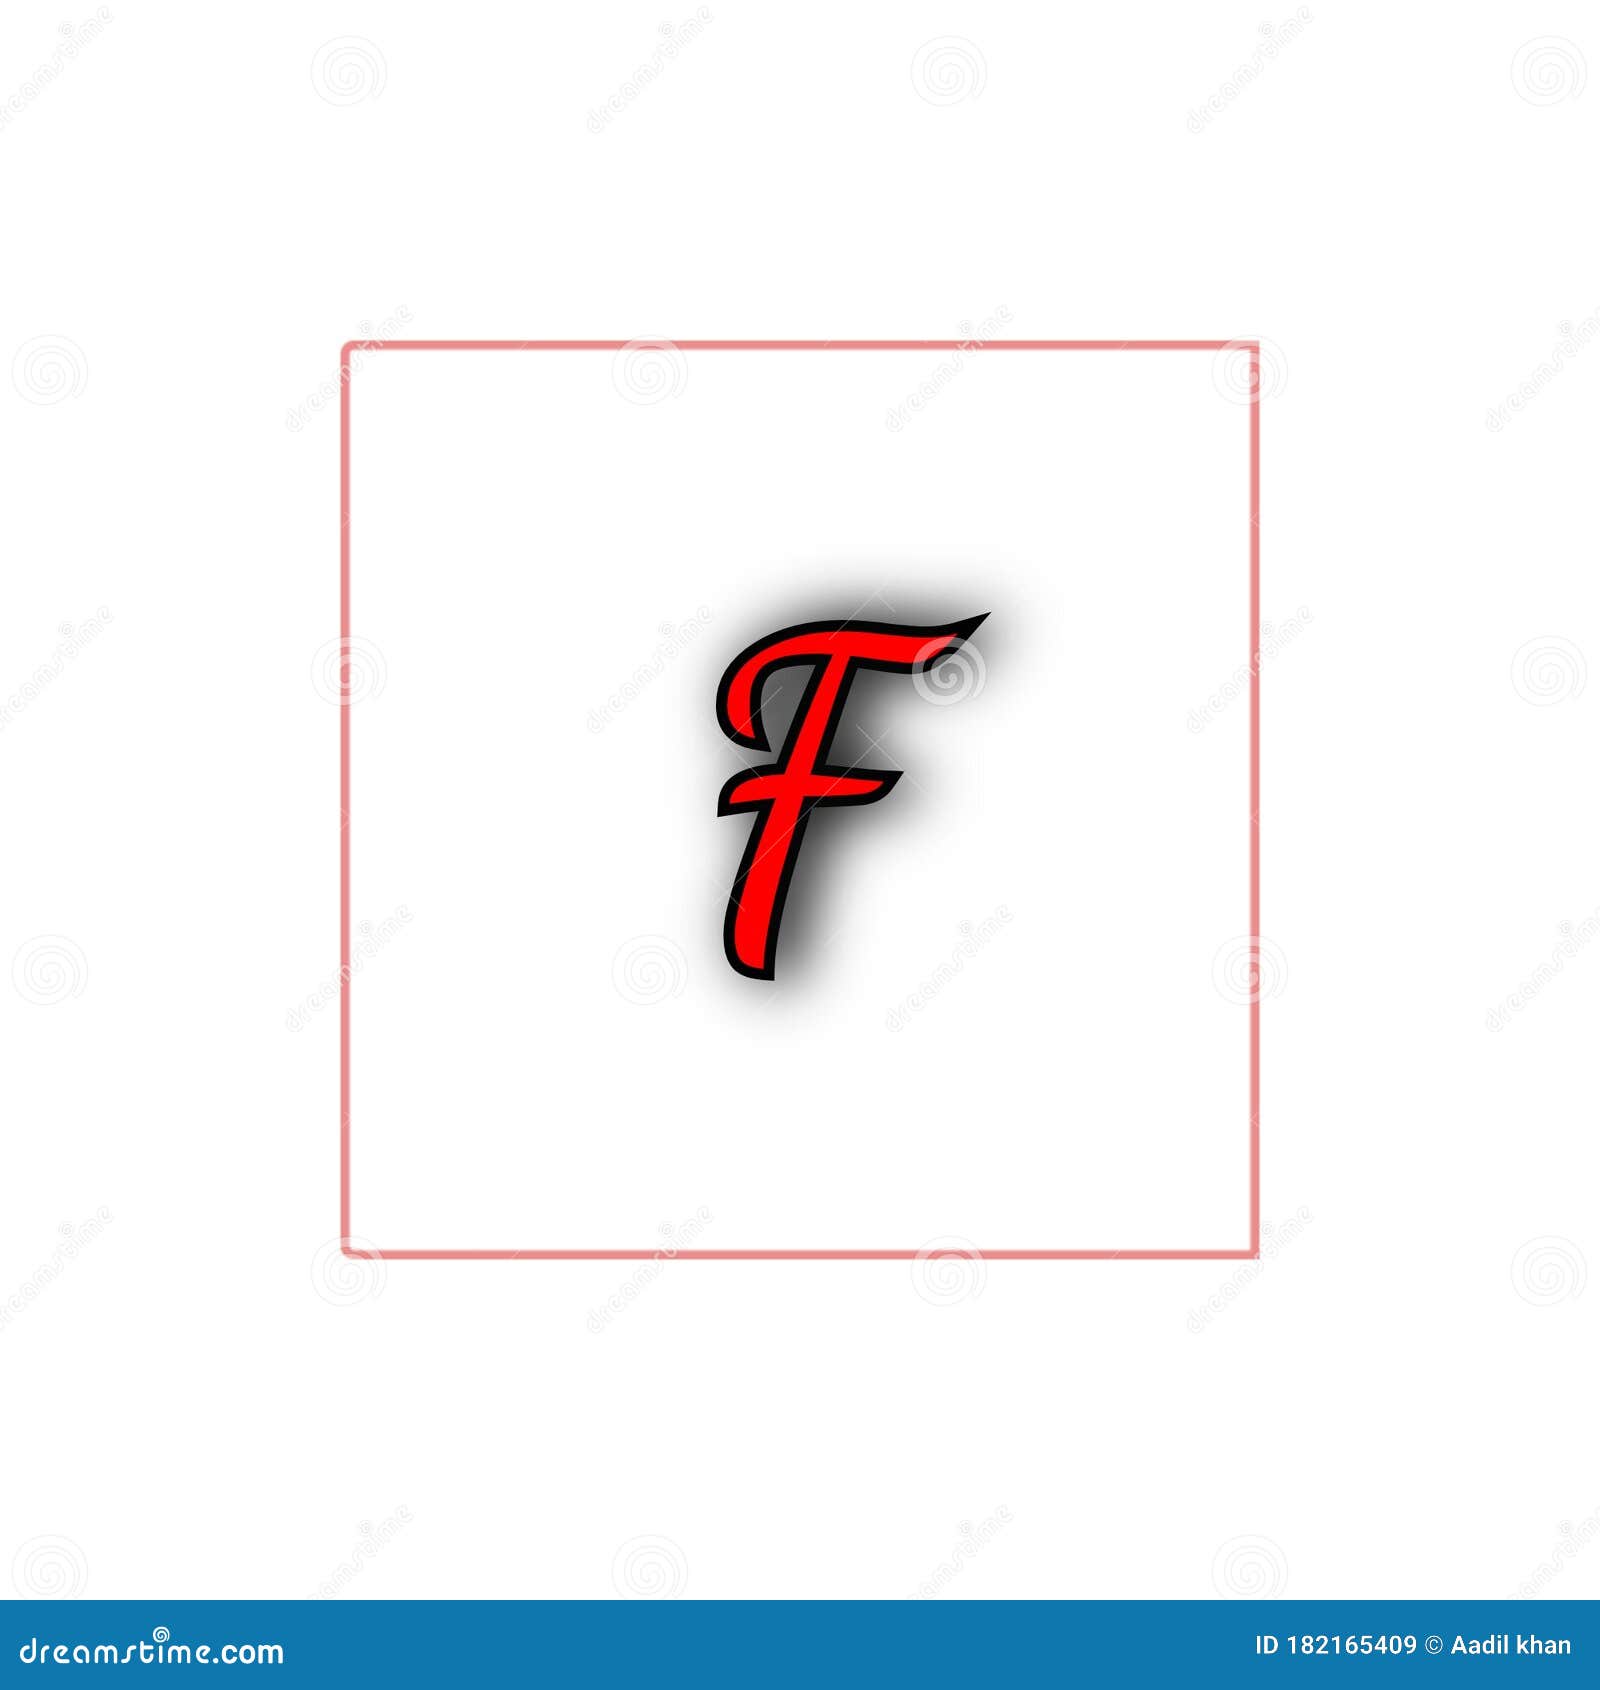 Stylish F Name Logo Wallpaper with White Background Stock Illustration -  Illustration of style, background: 182165409